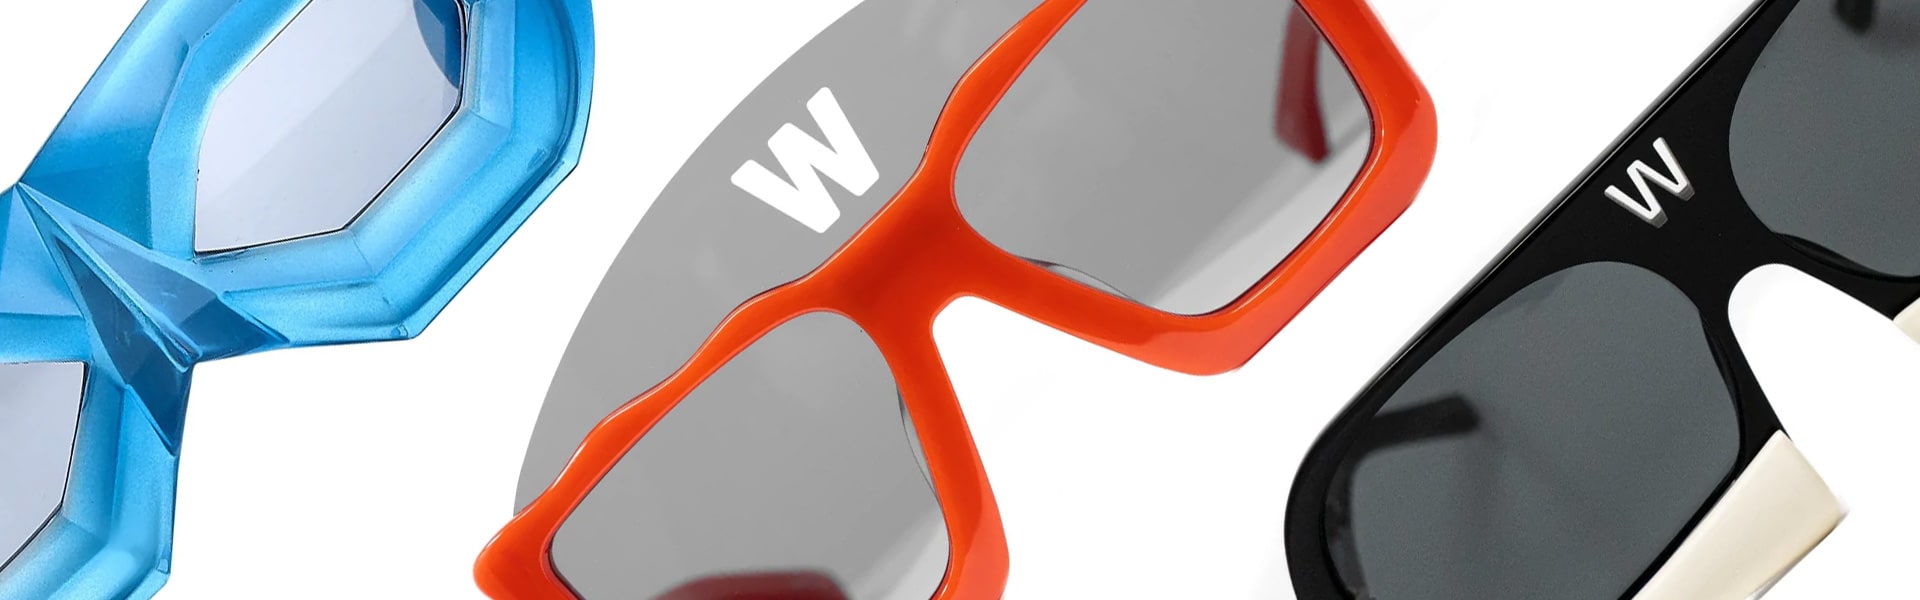 Sunglasses Walter Van Beirendonck Beige in Plastic - 28771881